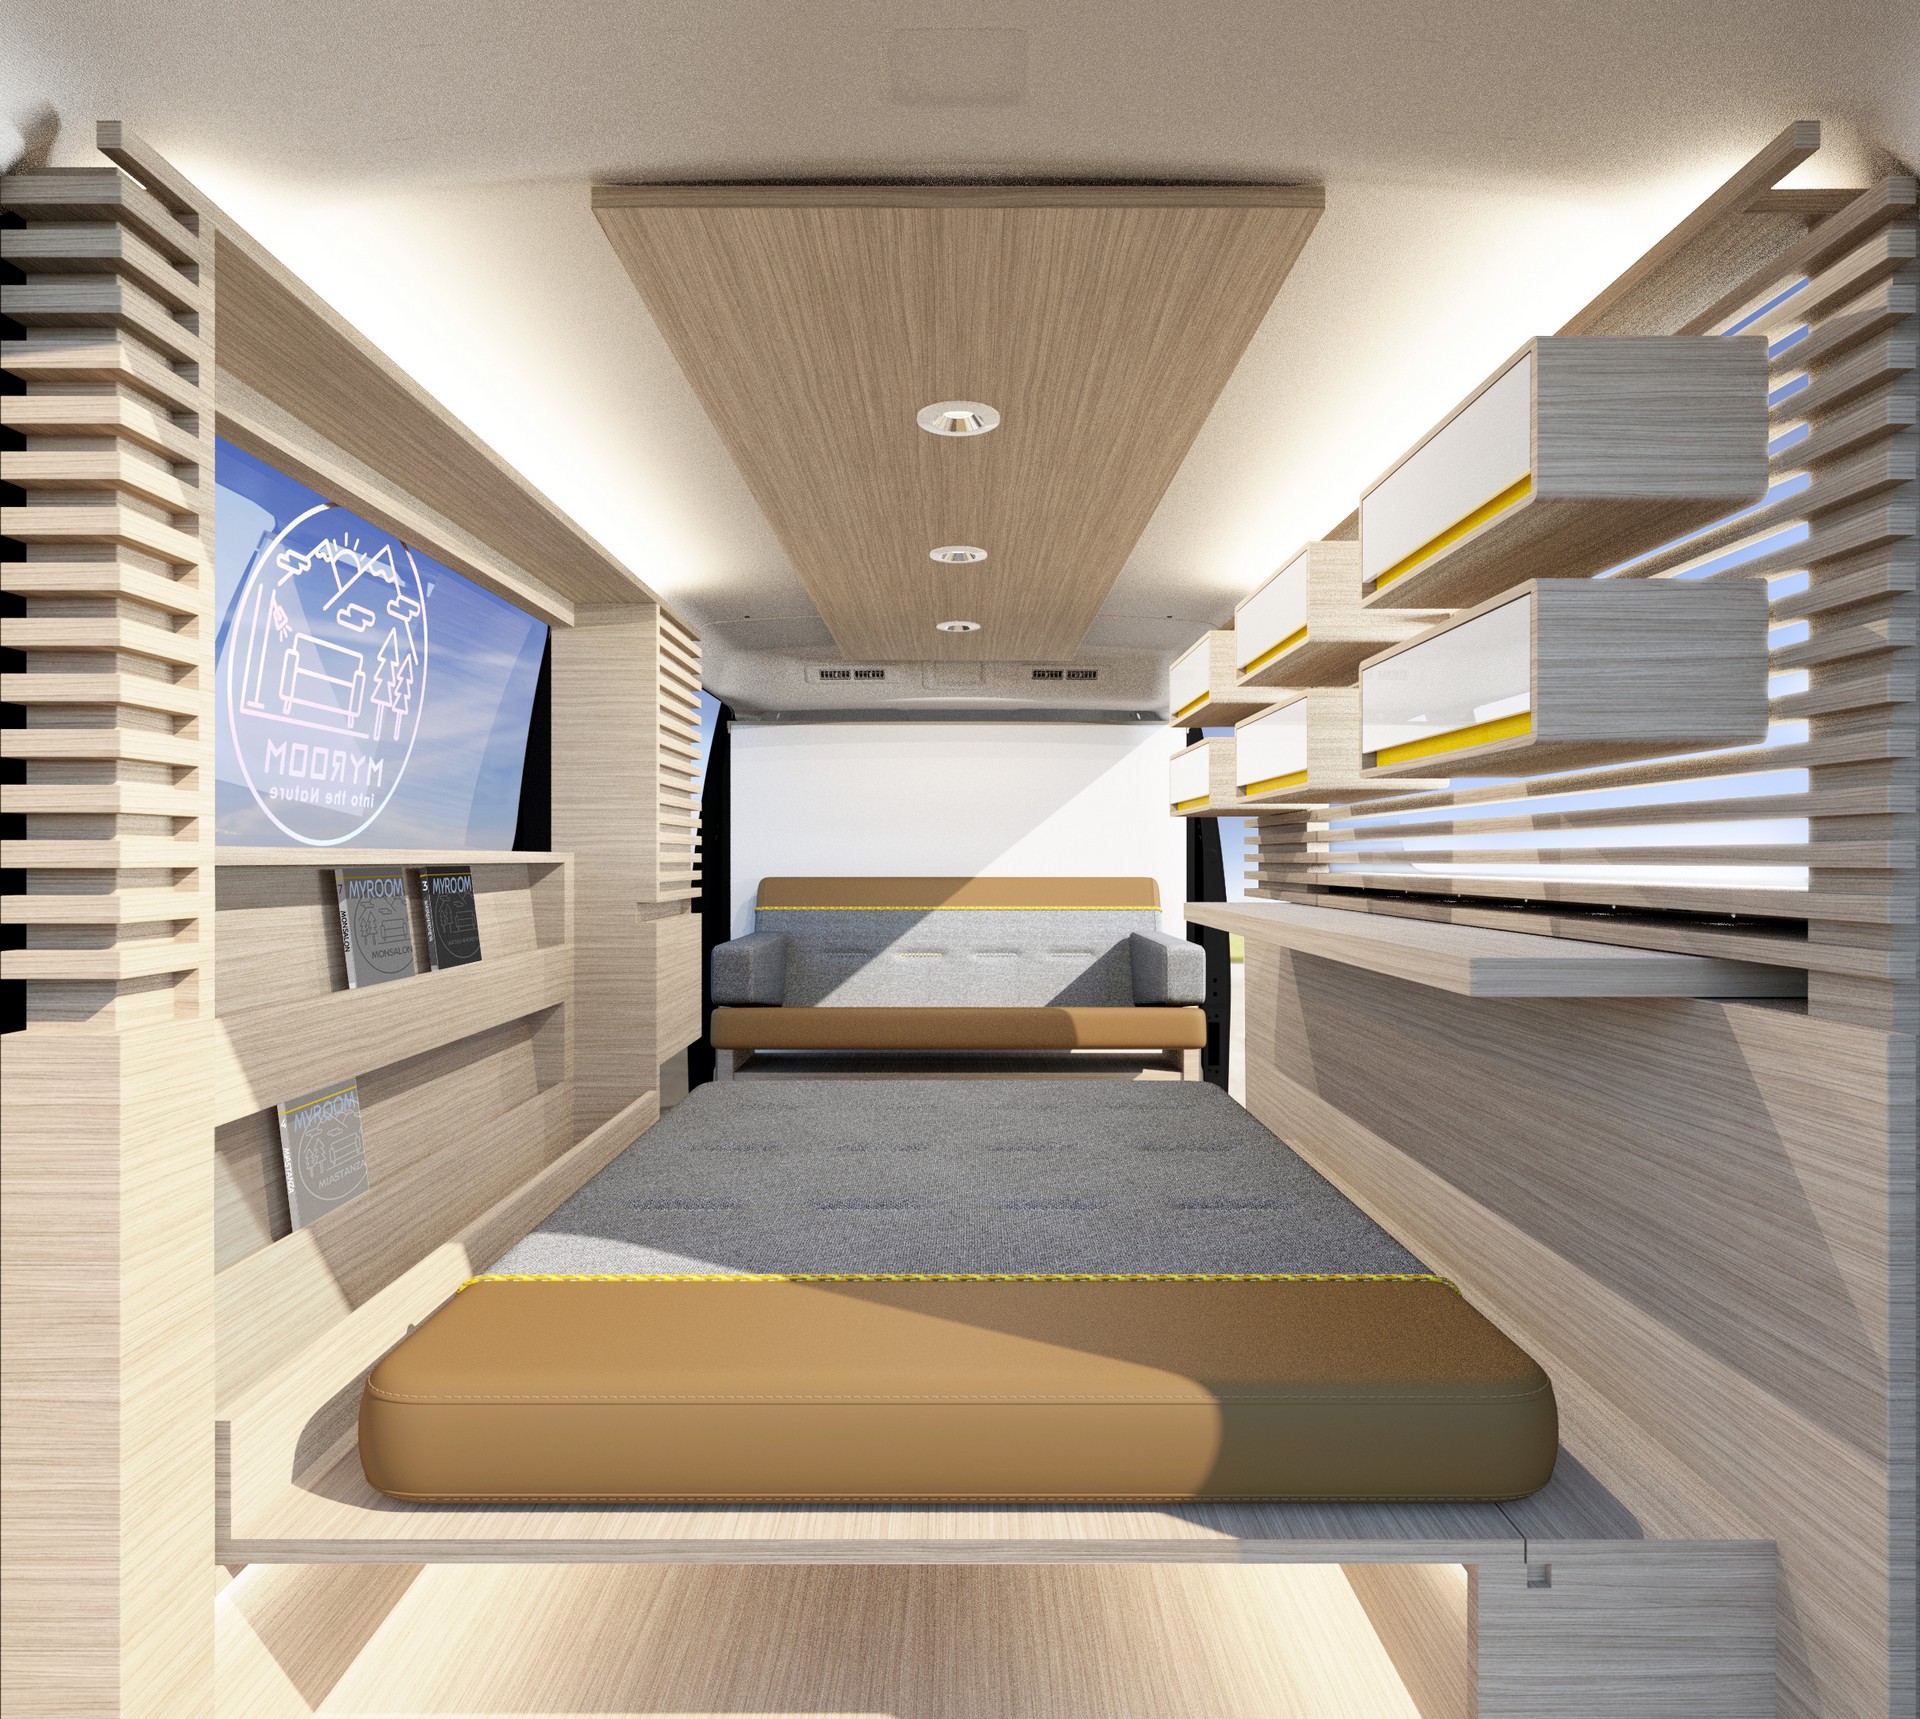 Nissan Caravan Myroom Concept interior